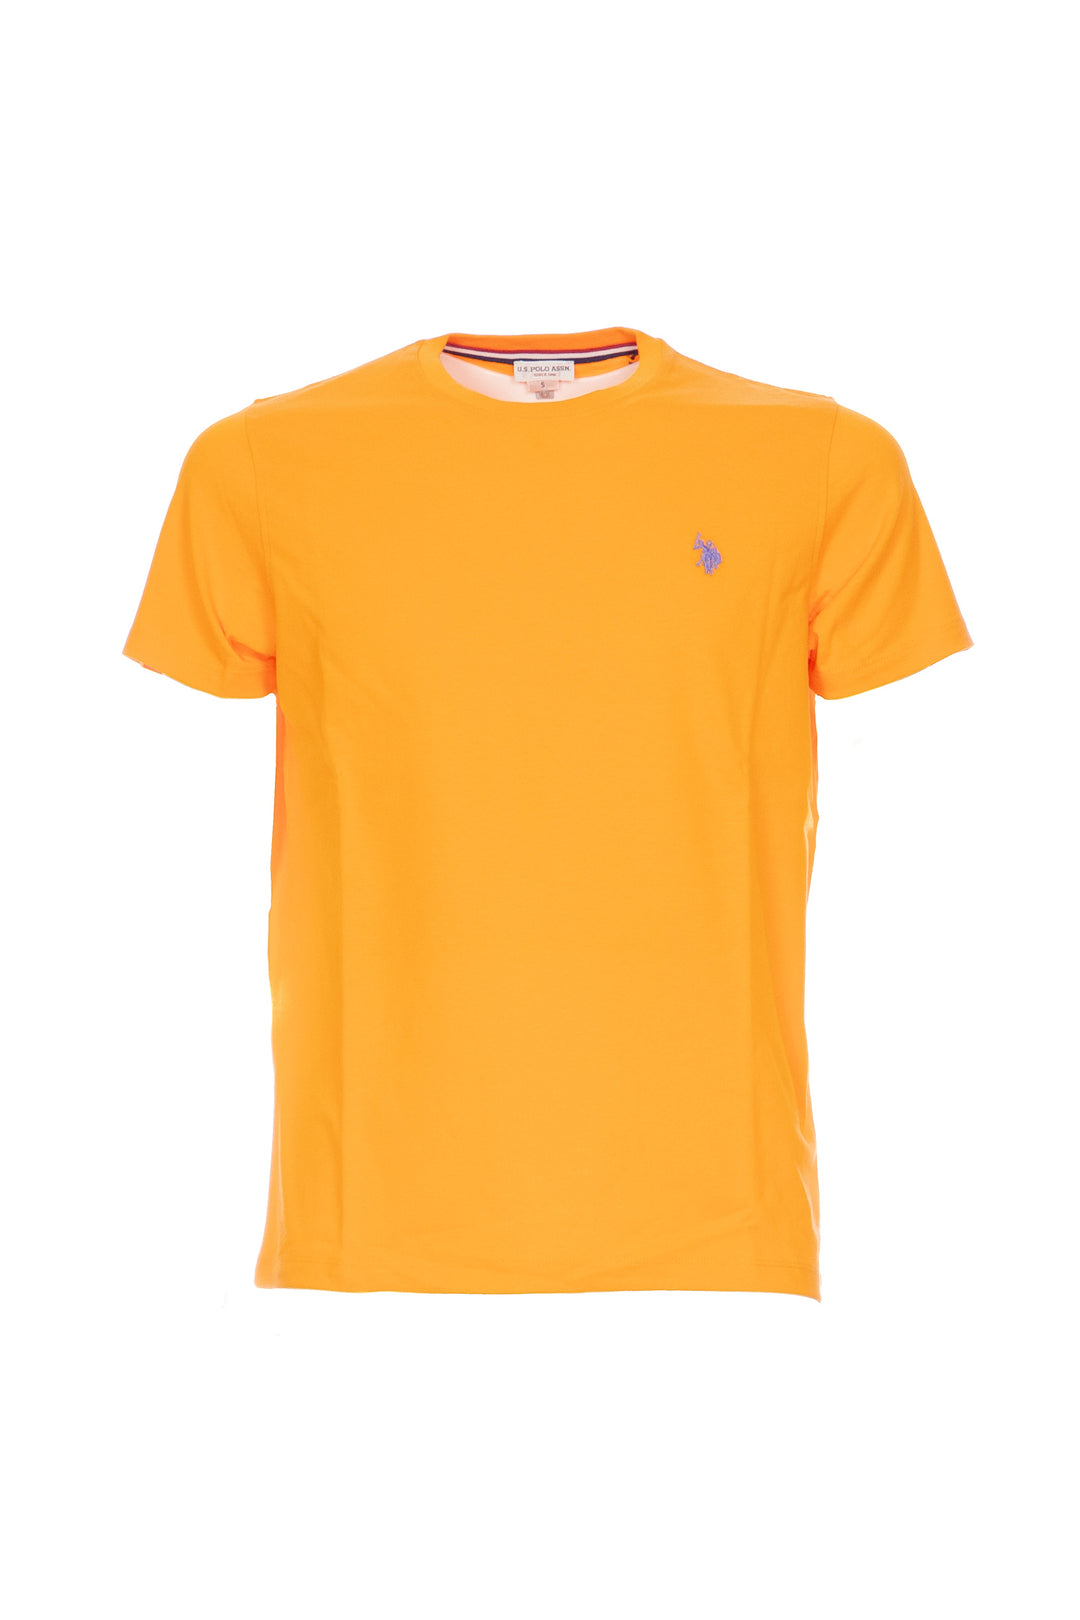 U.S. POLO ASSN. T-shirt arancio in cotone con logo ricamato sul petto - Mancinelli 1954